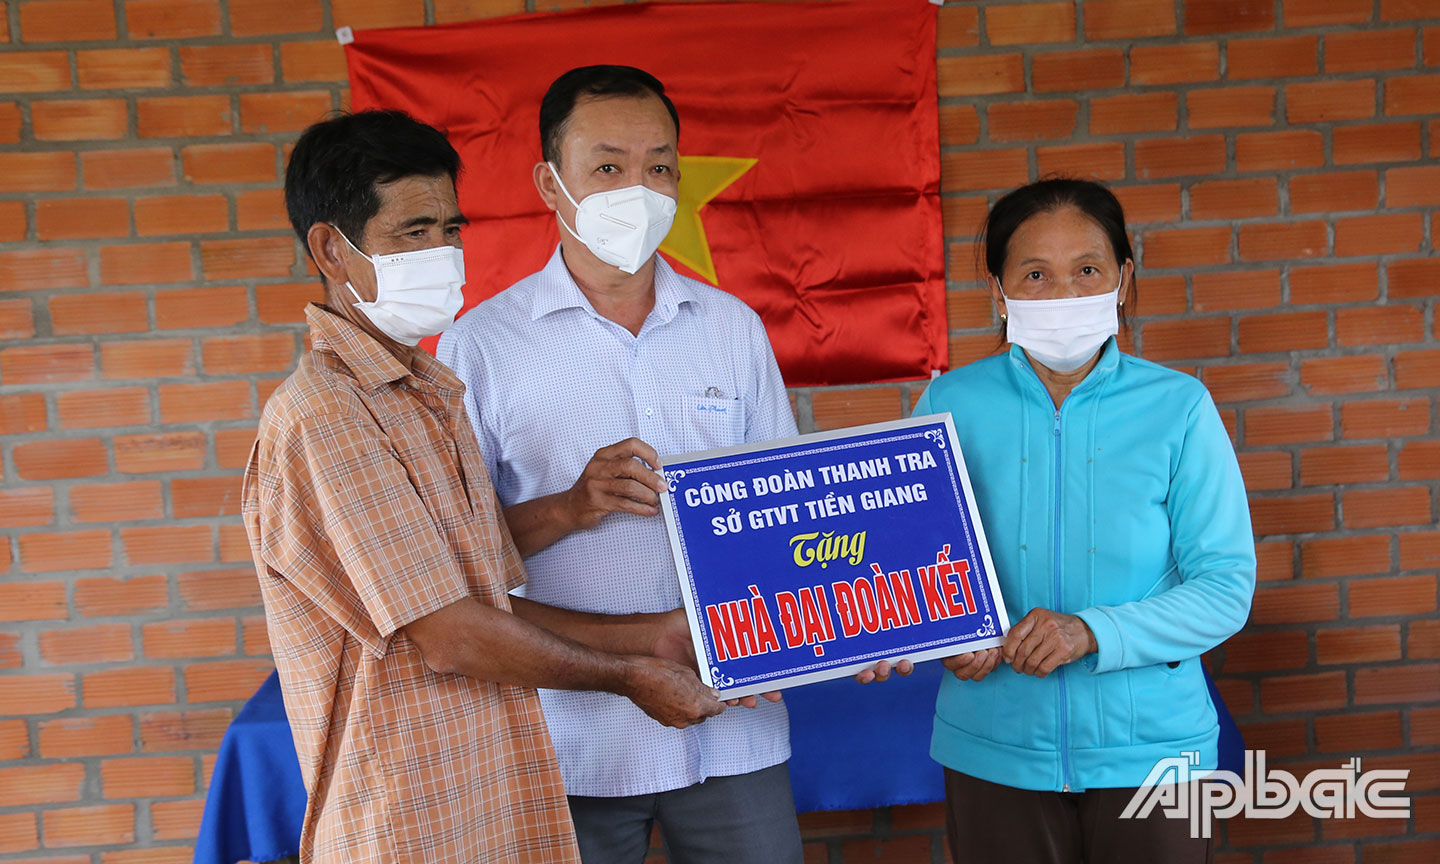 Công đoàn cơ sở Thanh tra Sở Giao thông vận tải tỉnh Tiền Giang trao tặng kinh phí hỗ trợ xây dựng nhà cho hộ gia đình nghèo Nguyễn Văn Bảy.